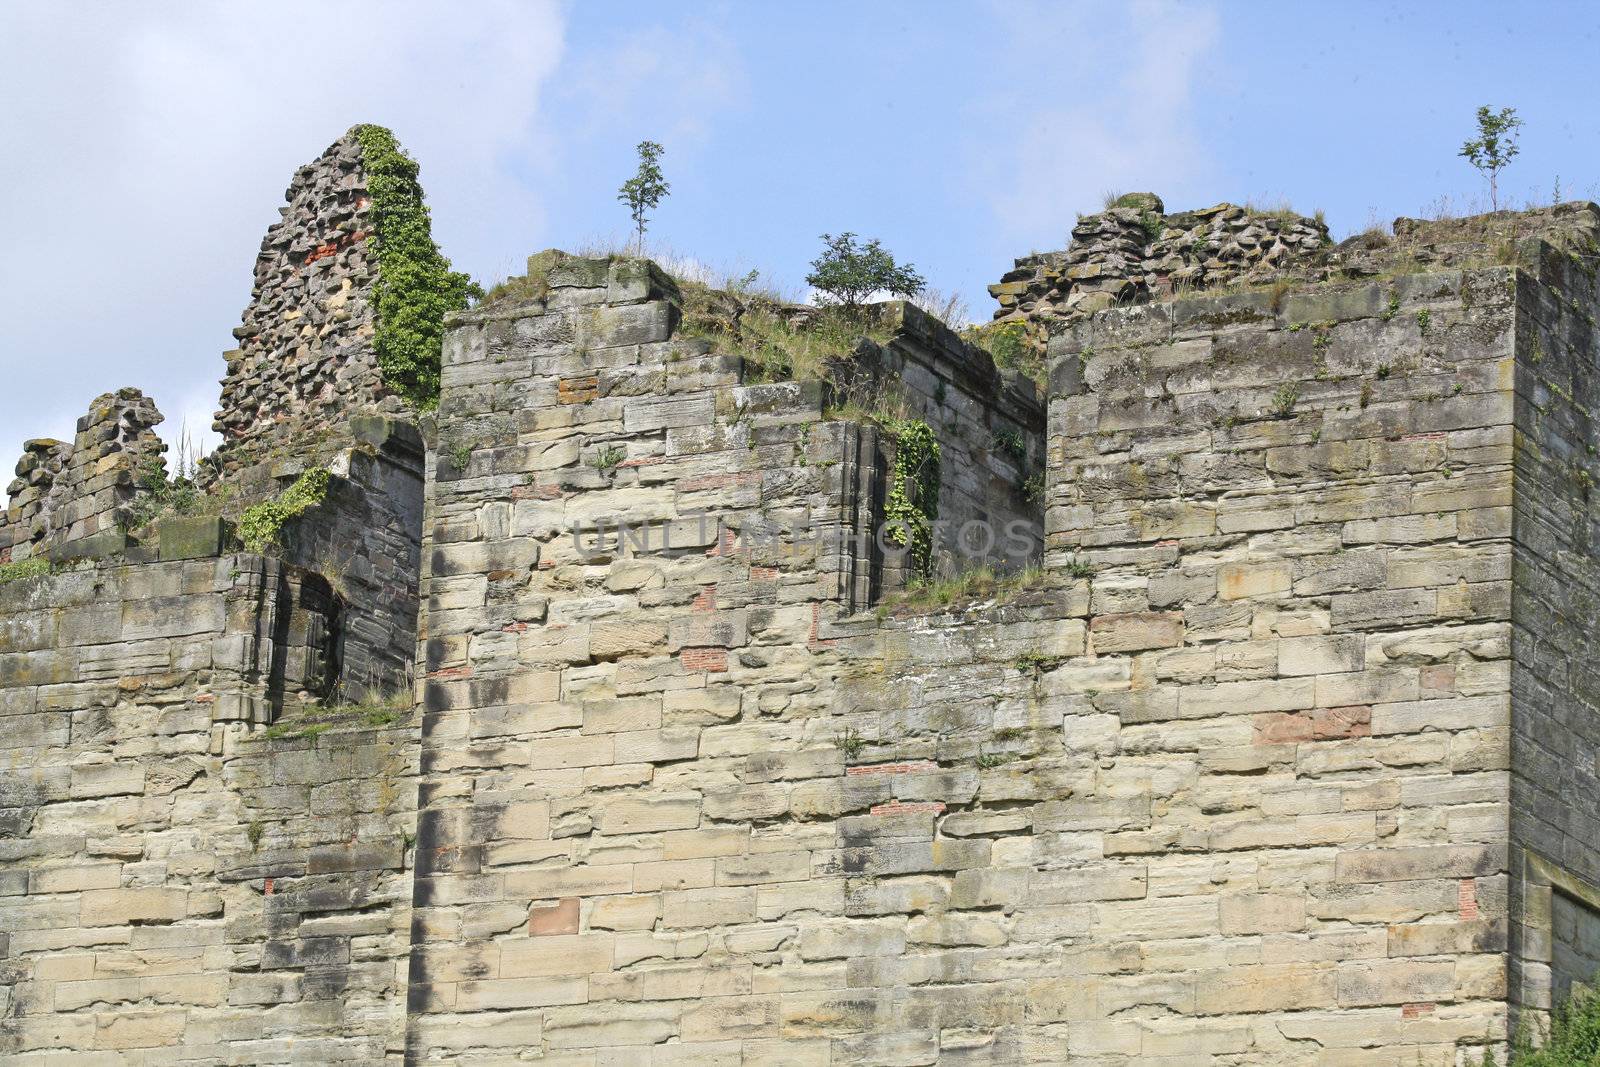 tut castle derbyshire uk, castle ruins